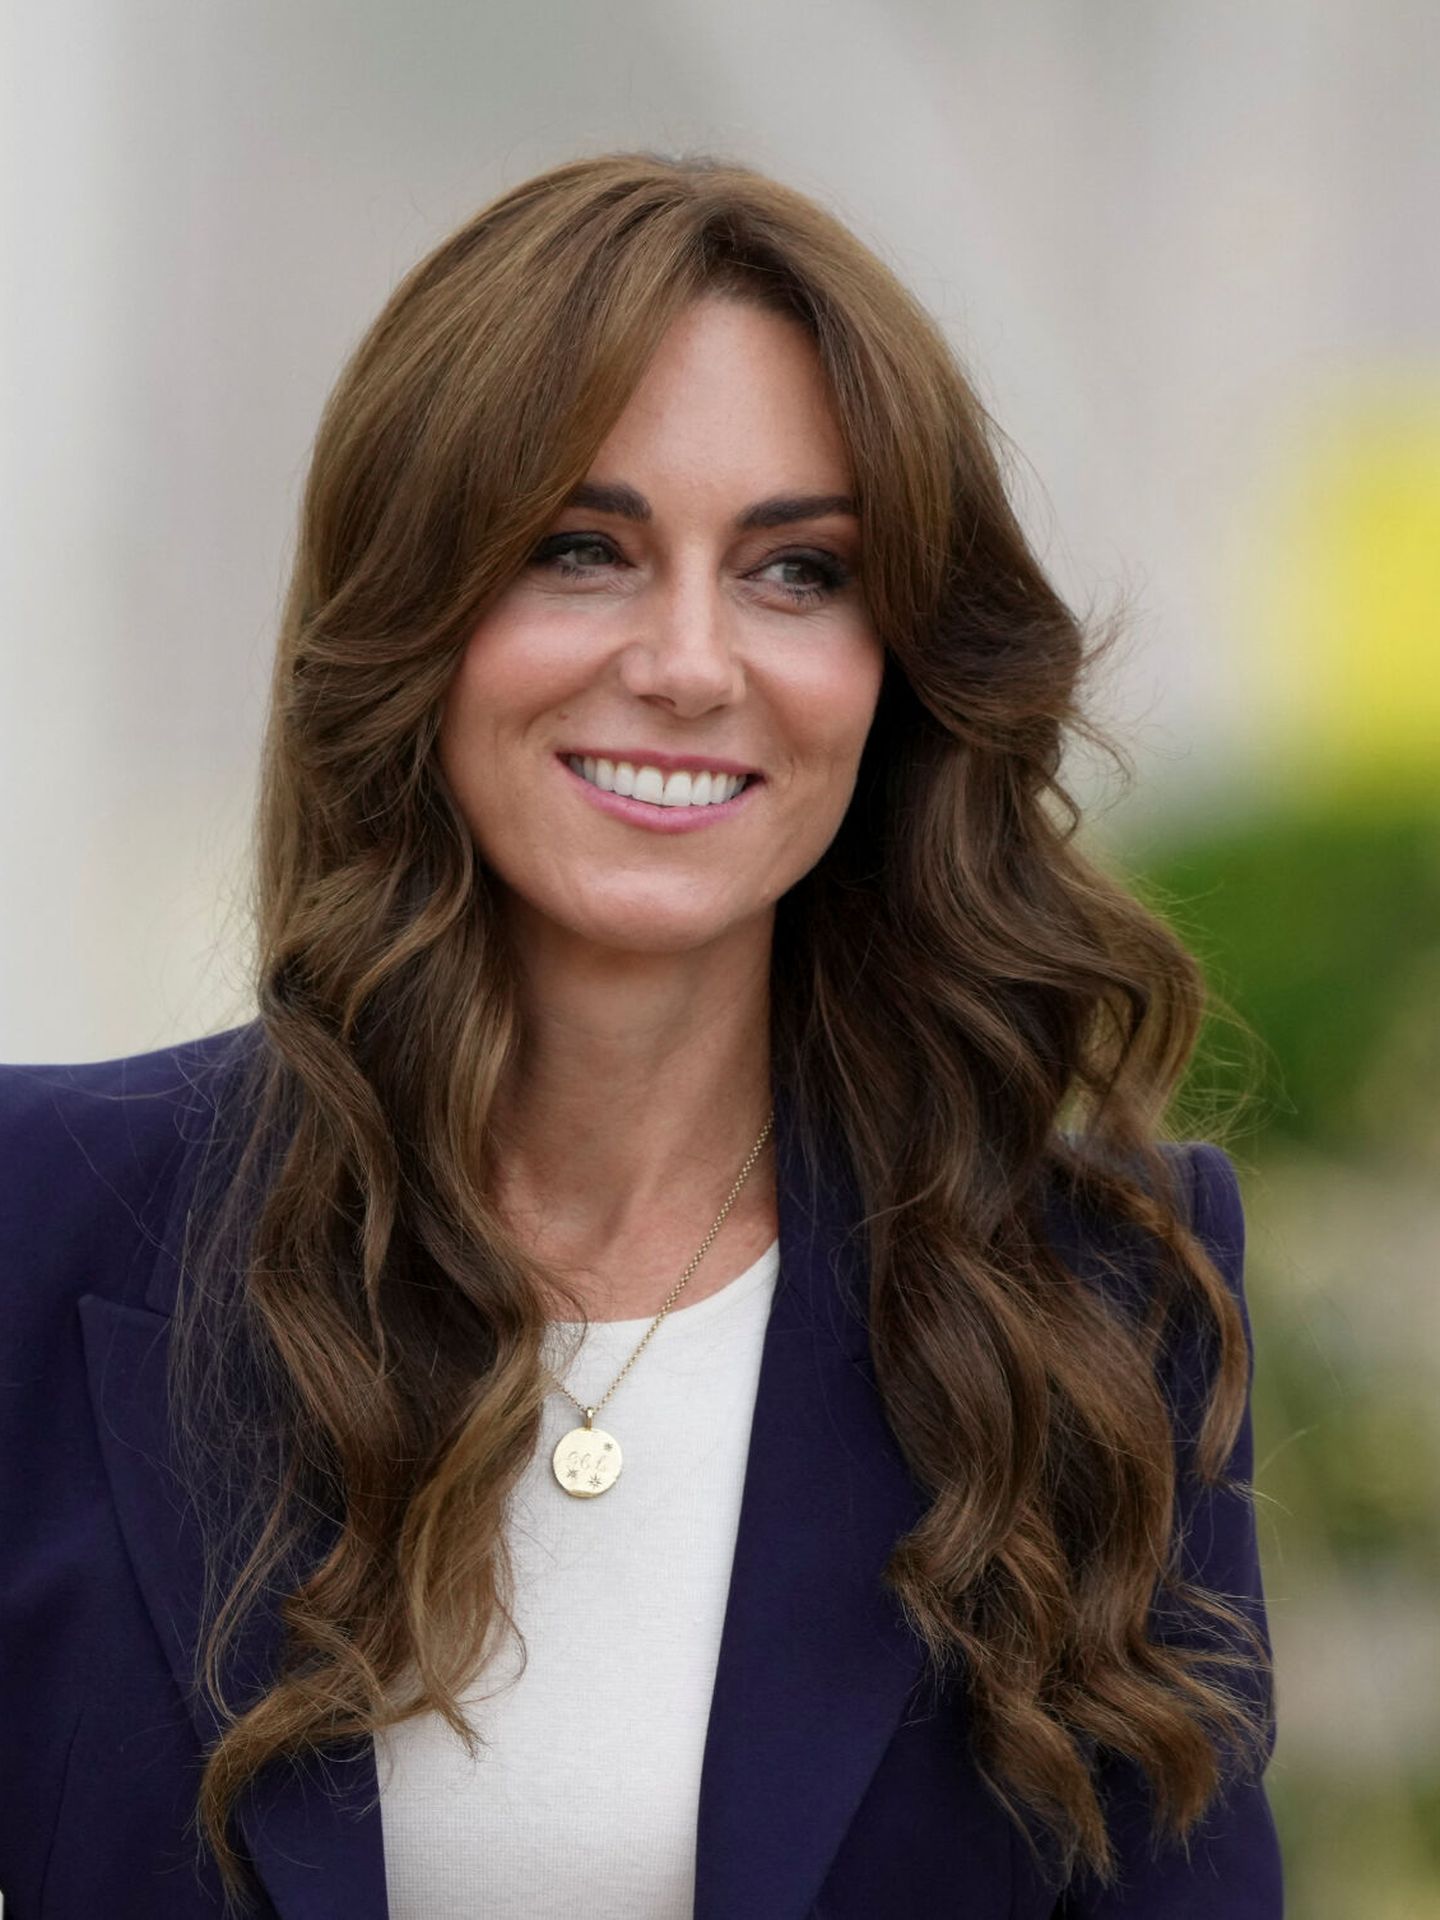 Detalle de la nueva coloración iluminada de Kate Middleton. (Reuters/Maja Smiejkowska)  